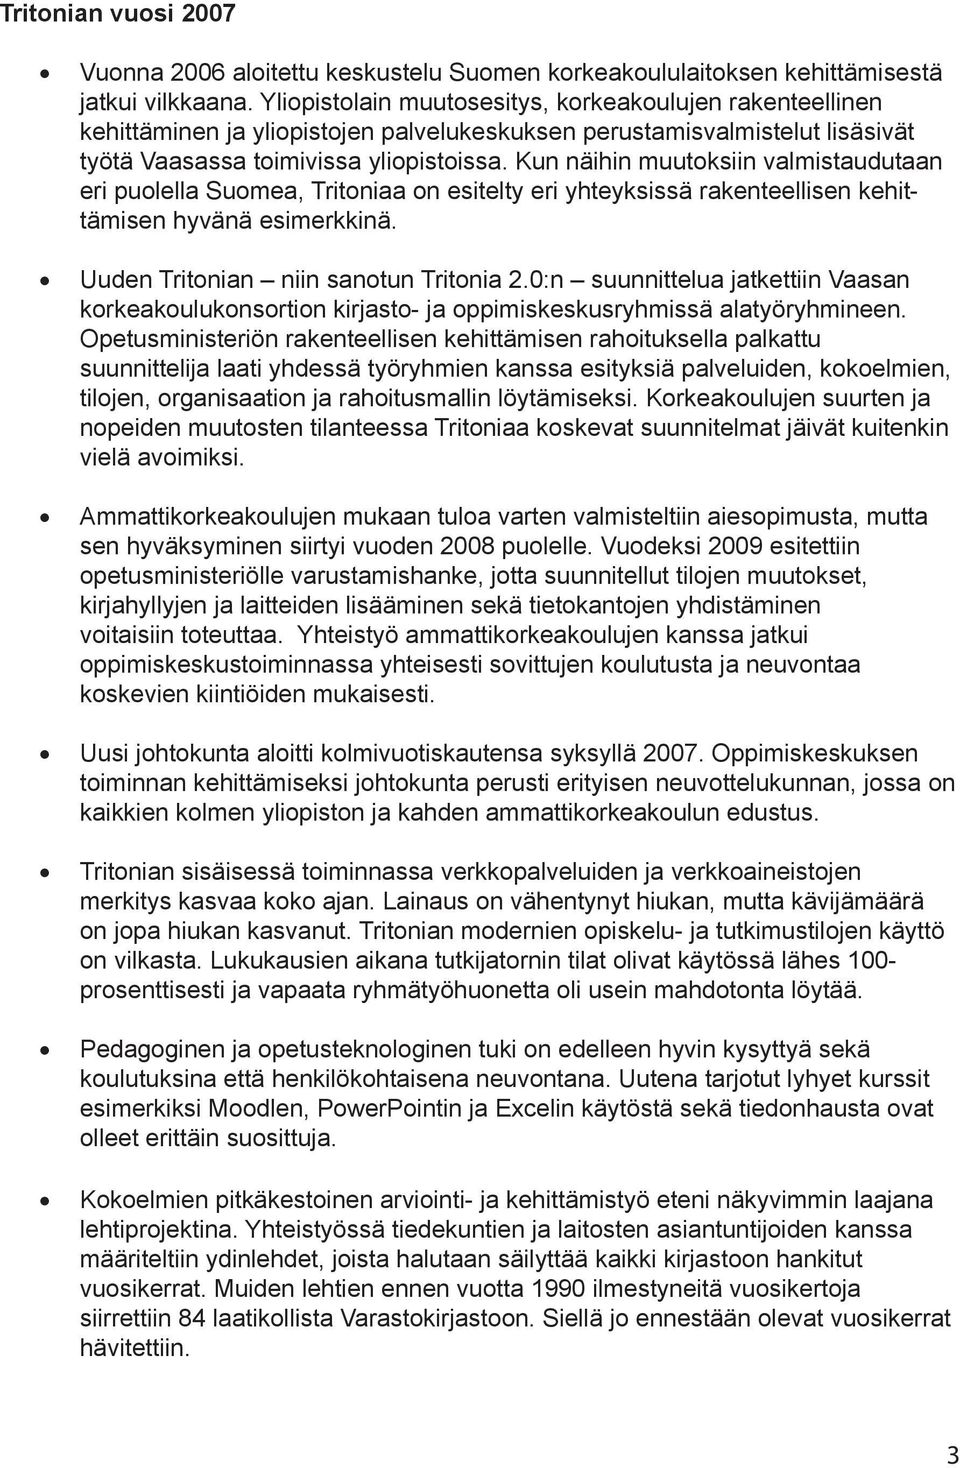 Kun näihin muutoksiin valmistaudutaan eri puolella Suomea, Tritoniaa on esitelty eri yhteyksissä rakenteellisen kehittämisen hyvänä esimerkkinä. Uuden Tritonian niin sanotun Tritonia 2.